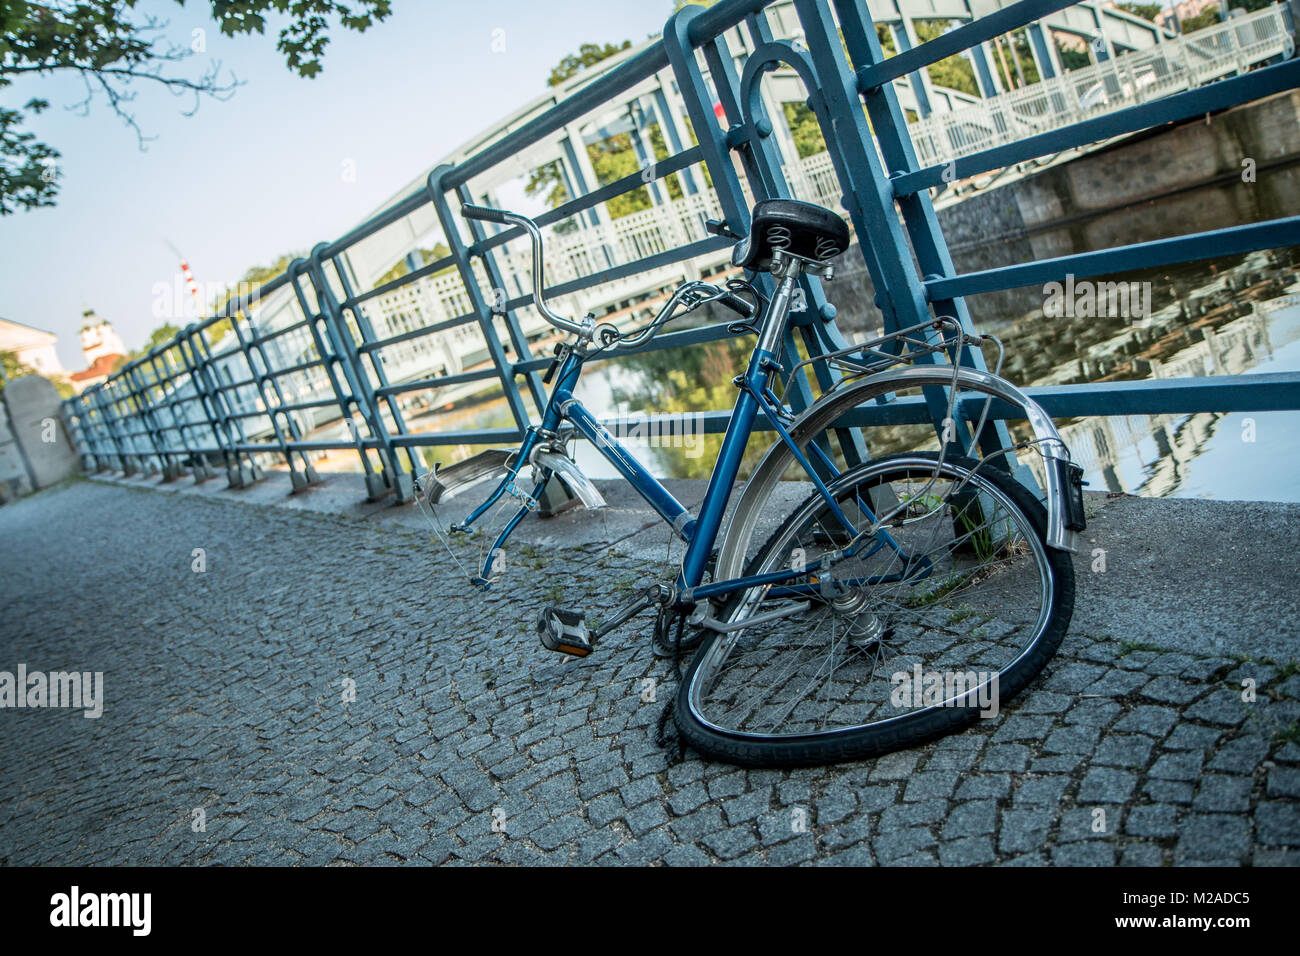 Ein kaputtes Fahrrad ist an das Geländer am Fluss in der Innenstadt  gesperrt. Das Vorderrad wurde gestohlen Stockfotografie - Alamy